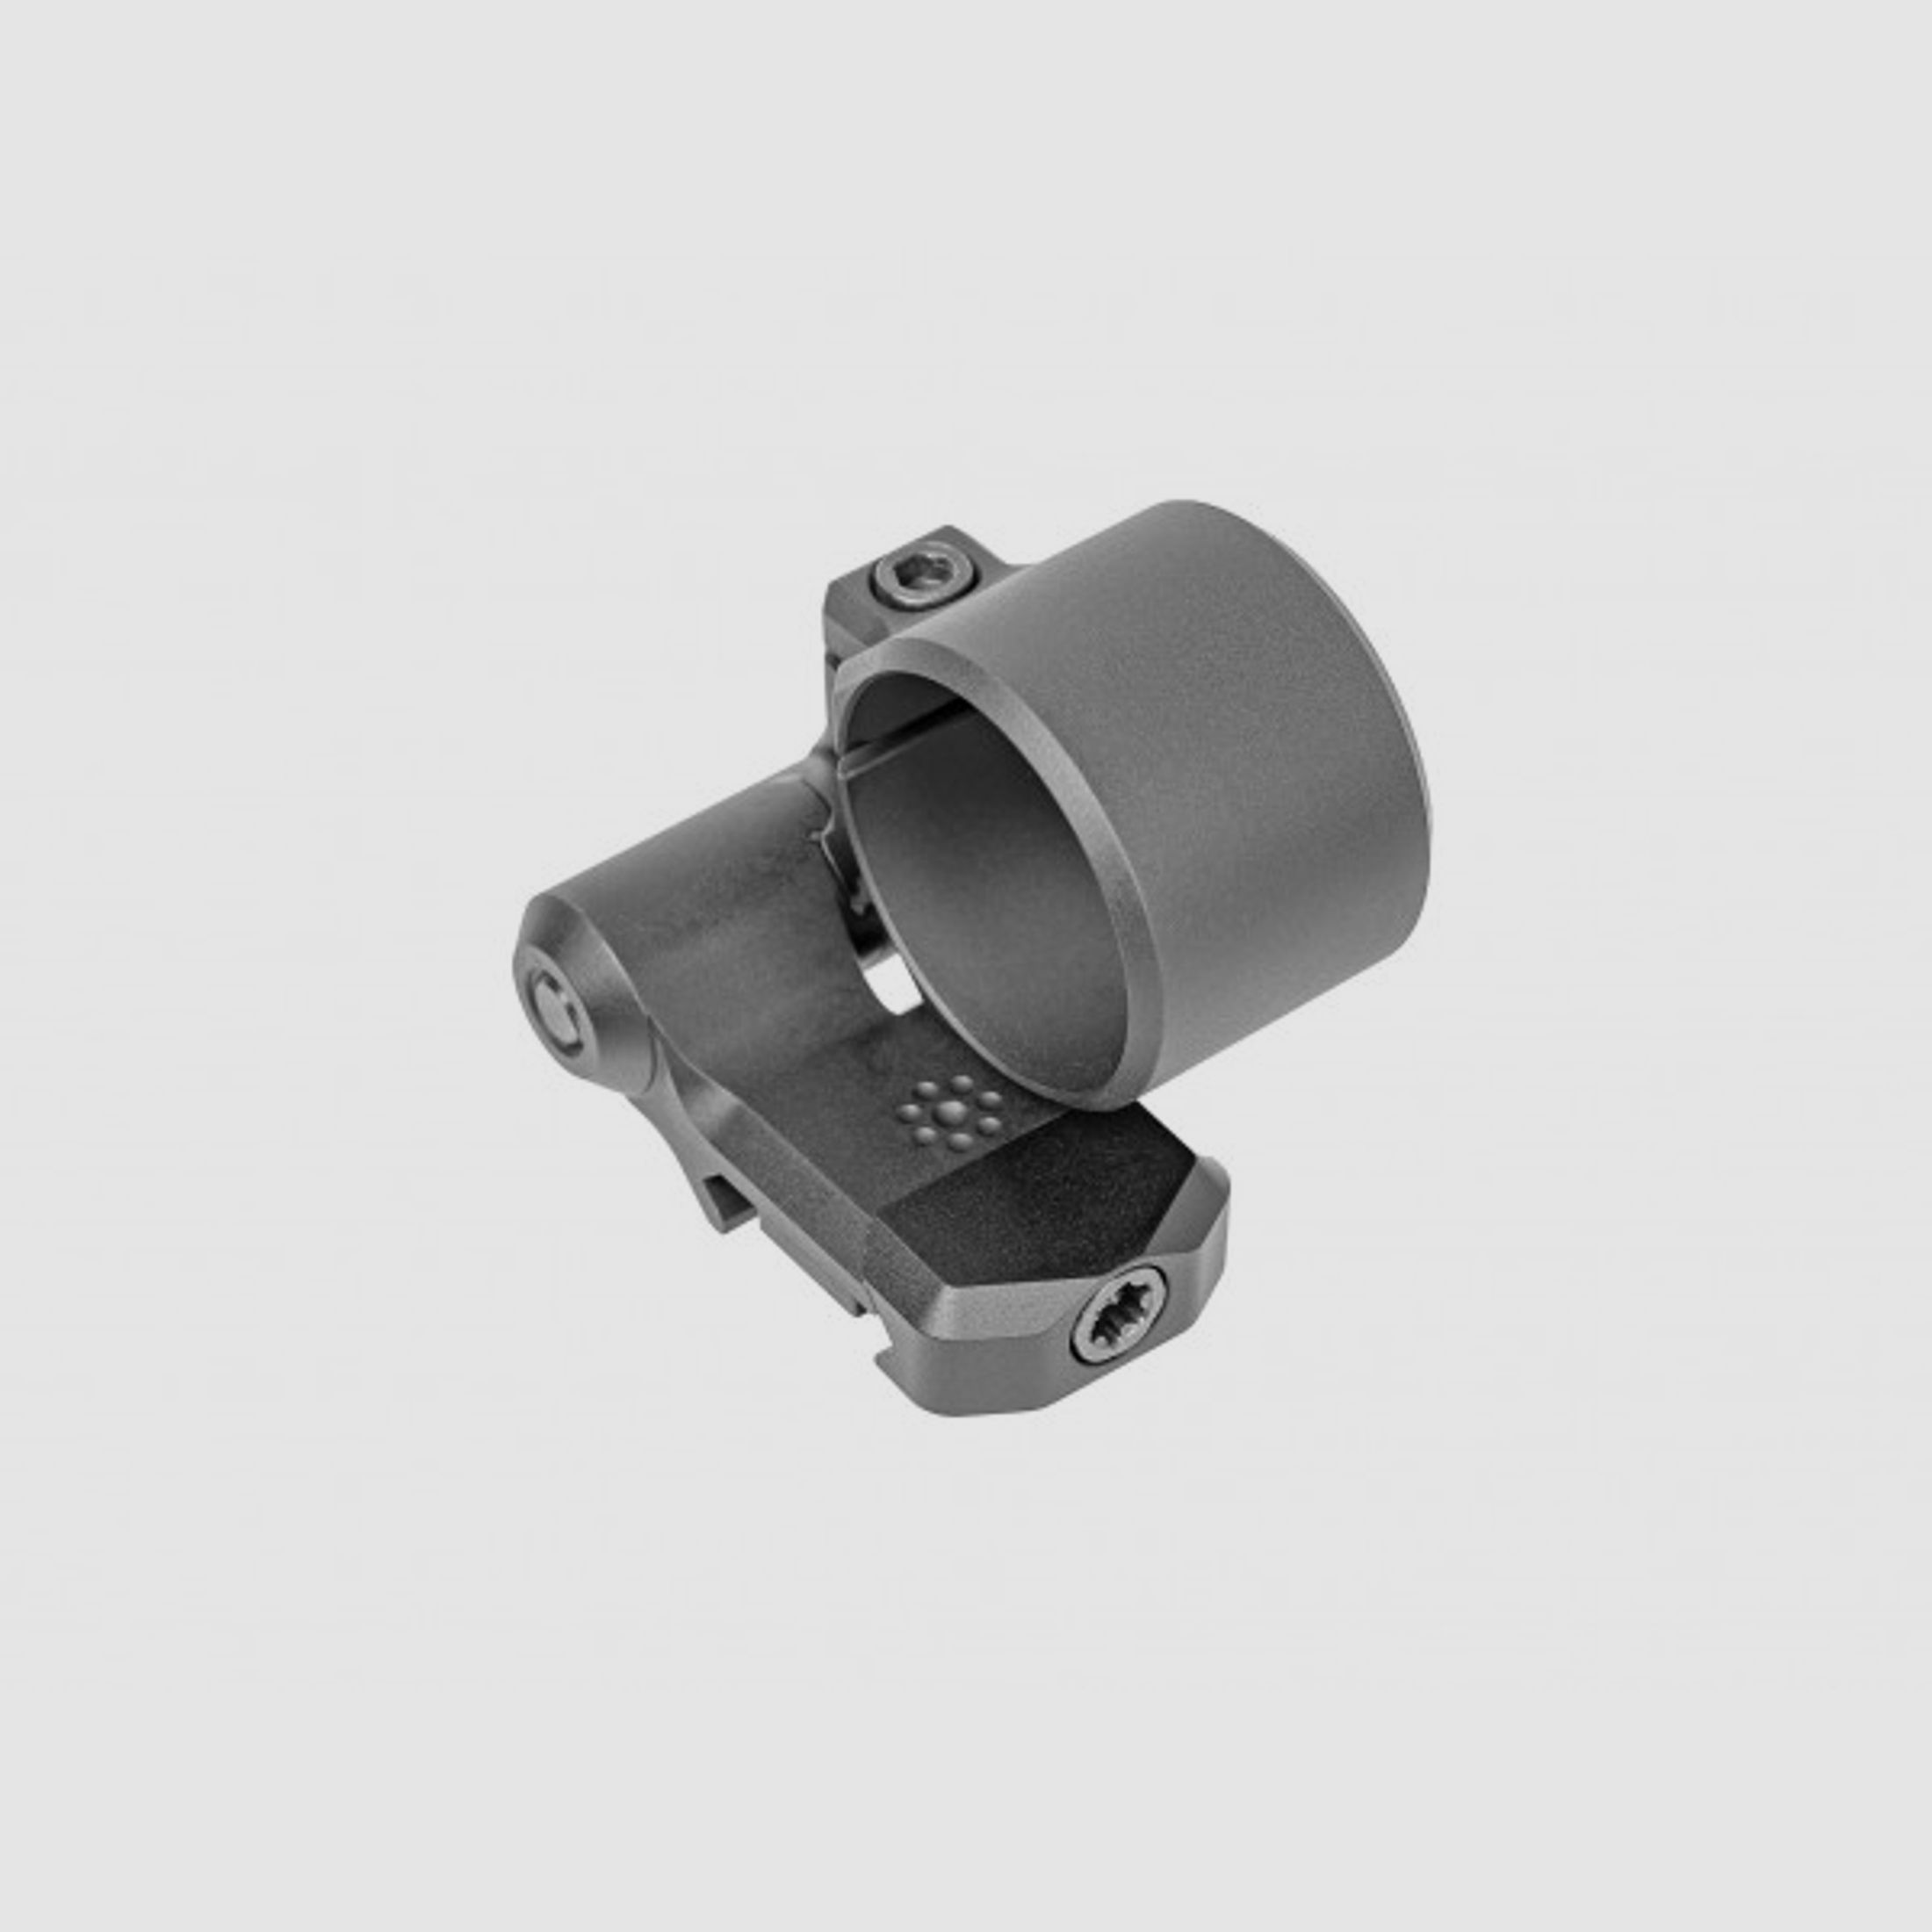 Arisaka Defense Magnifier Low Mount für Aimpoint Vergrößerungsmodule